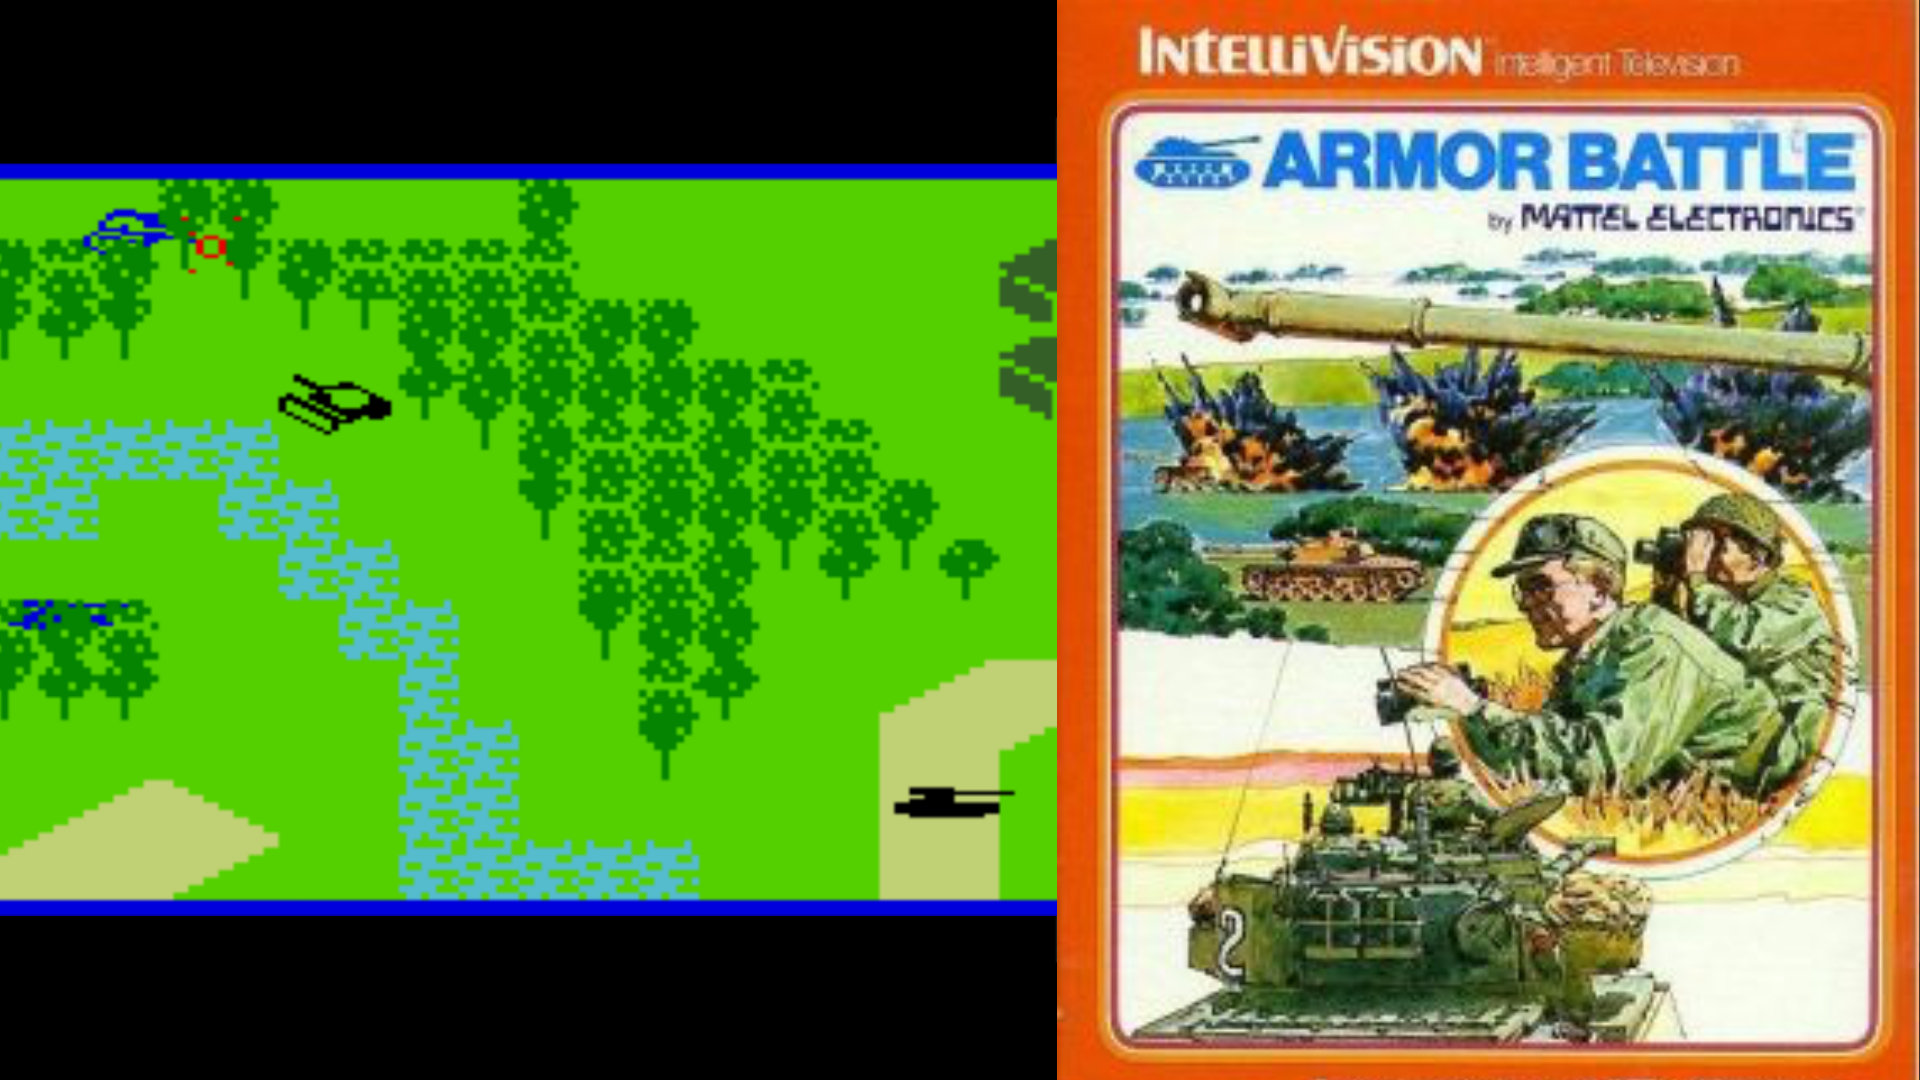 Die 1979 von Mattel Electronics für Intellivision veröffentlichte Armor Battle erzählt grafisch klar dargestellte Panzerschlachten, dem Spieler selbst wird von der Packung die bevorzugte Spielpose und -kleidung vorgegeben (Fernglas not included). (Bild: Andreas Wanda)